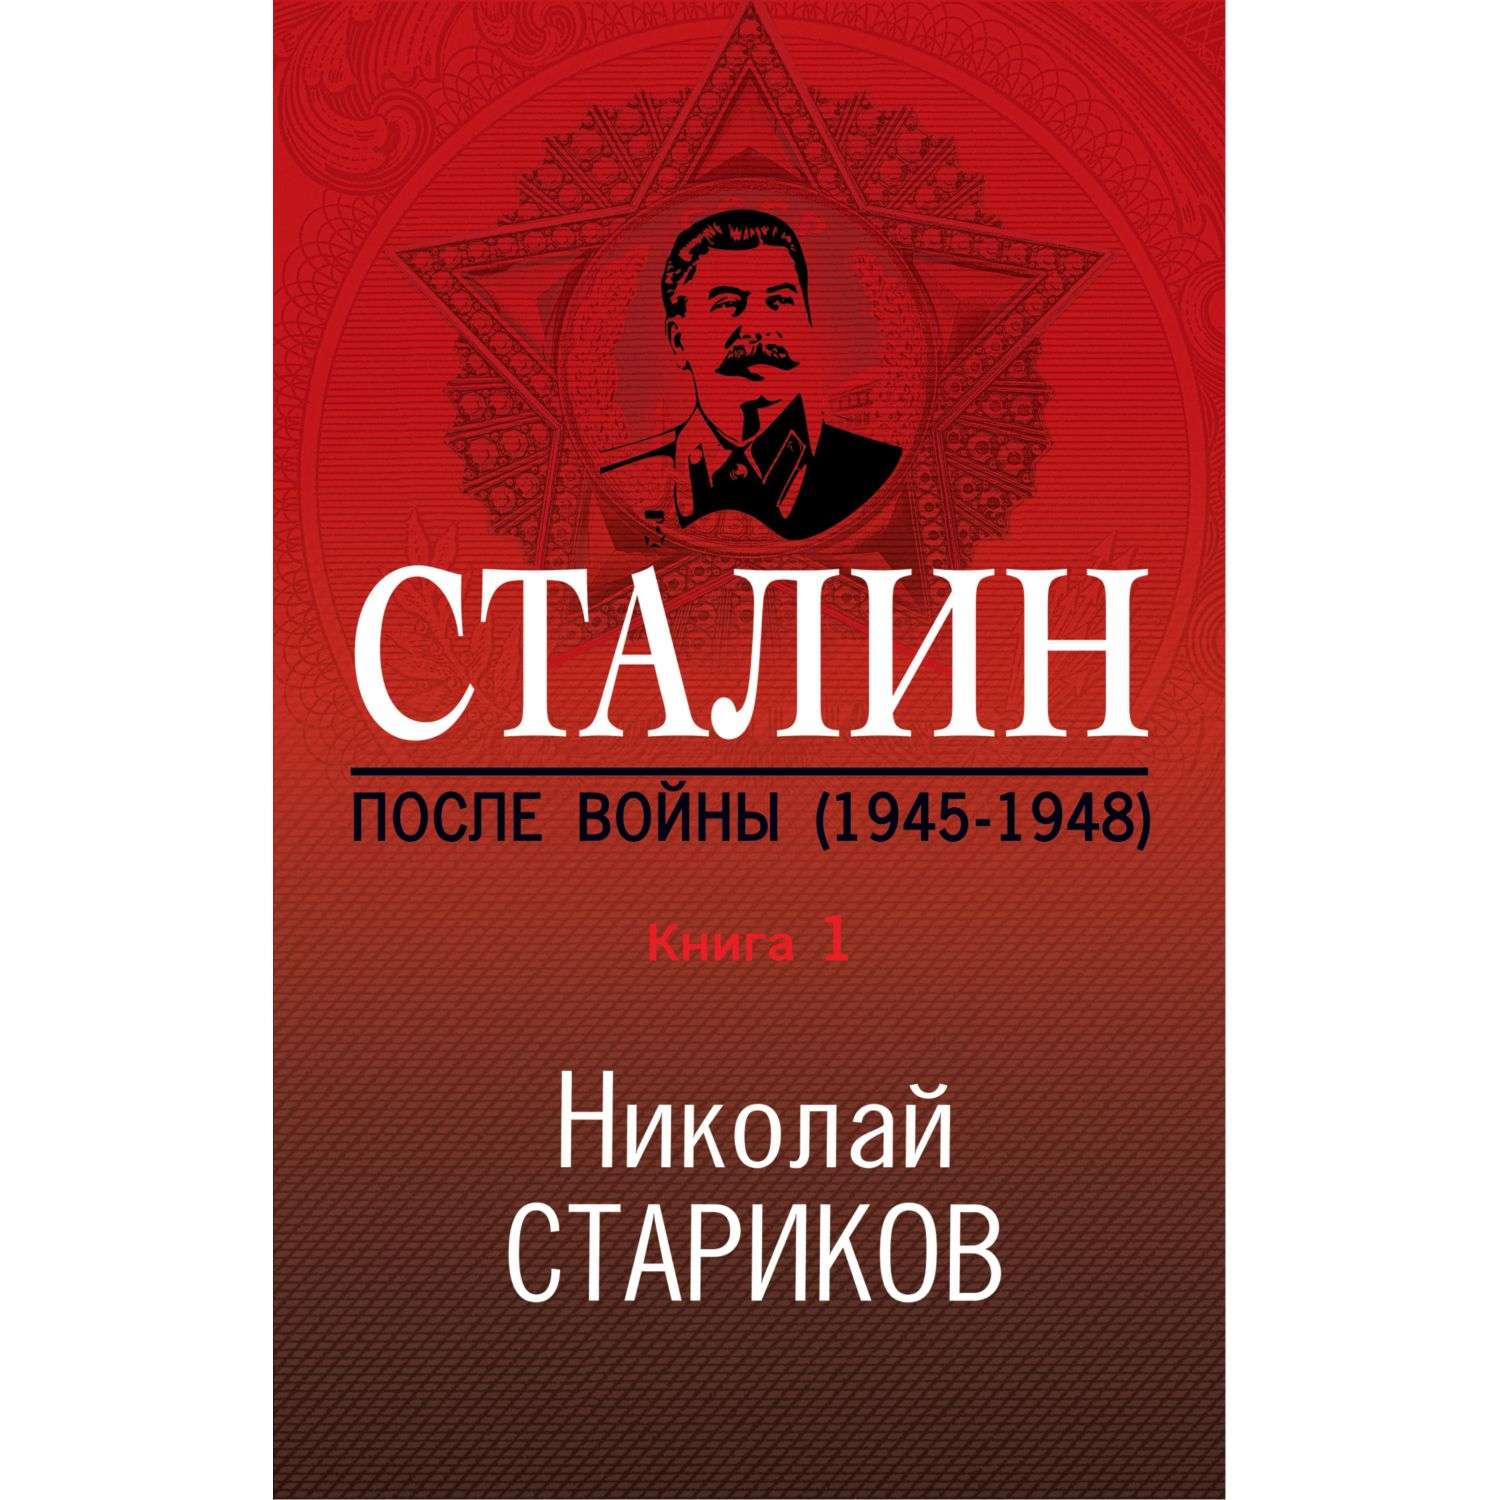 Книга Эксмо Сталин После войны Часть первая 1945-1948 - фото 1